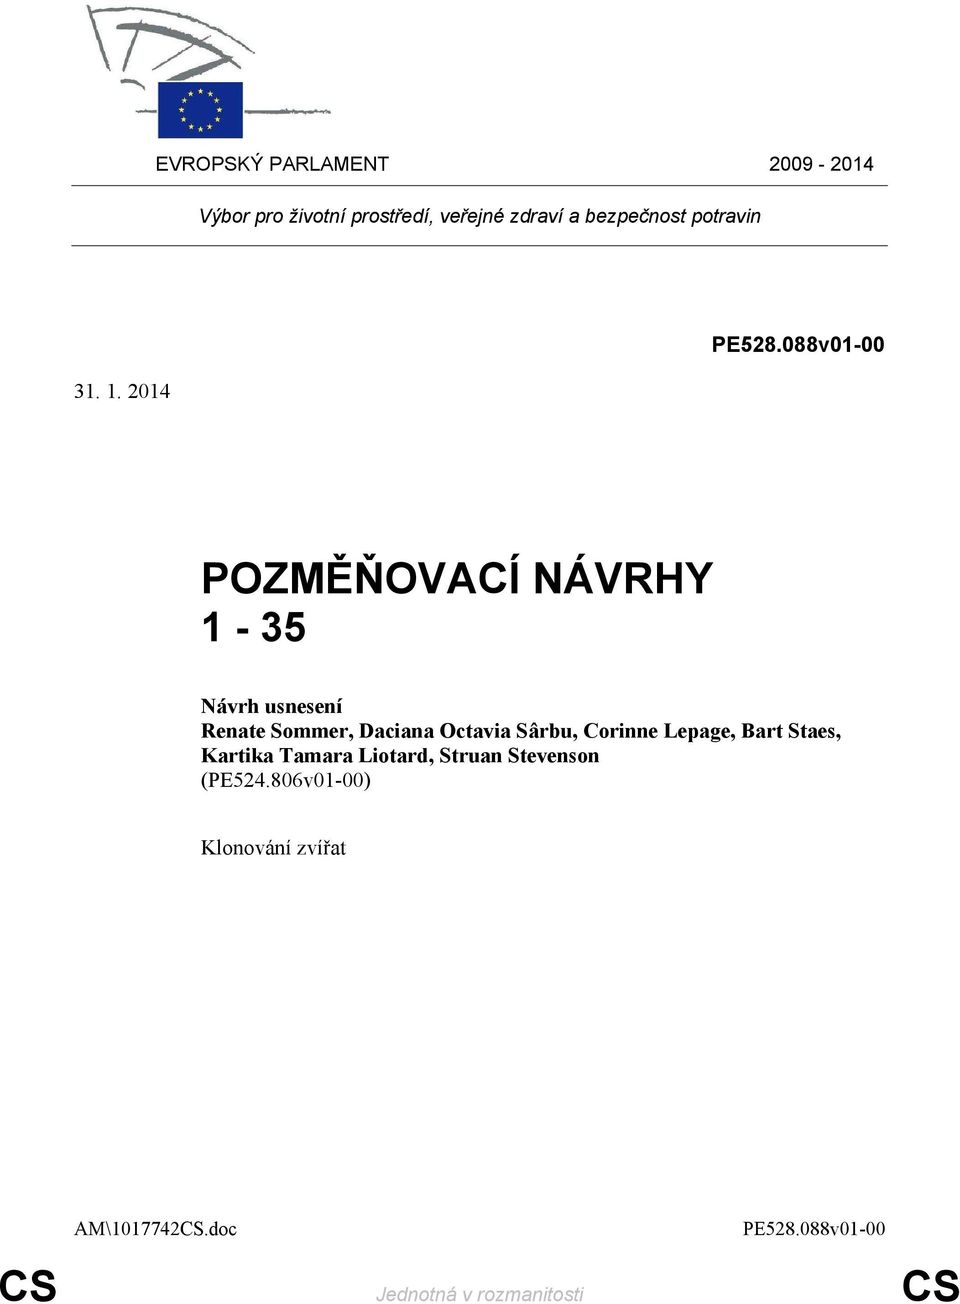 088v01-00 POZMĚŇOVACÍ NÁVRHY 1-35 Renate Sommer, Daciana Octavia Sârbu, Corinne